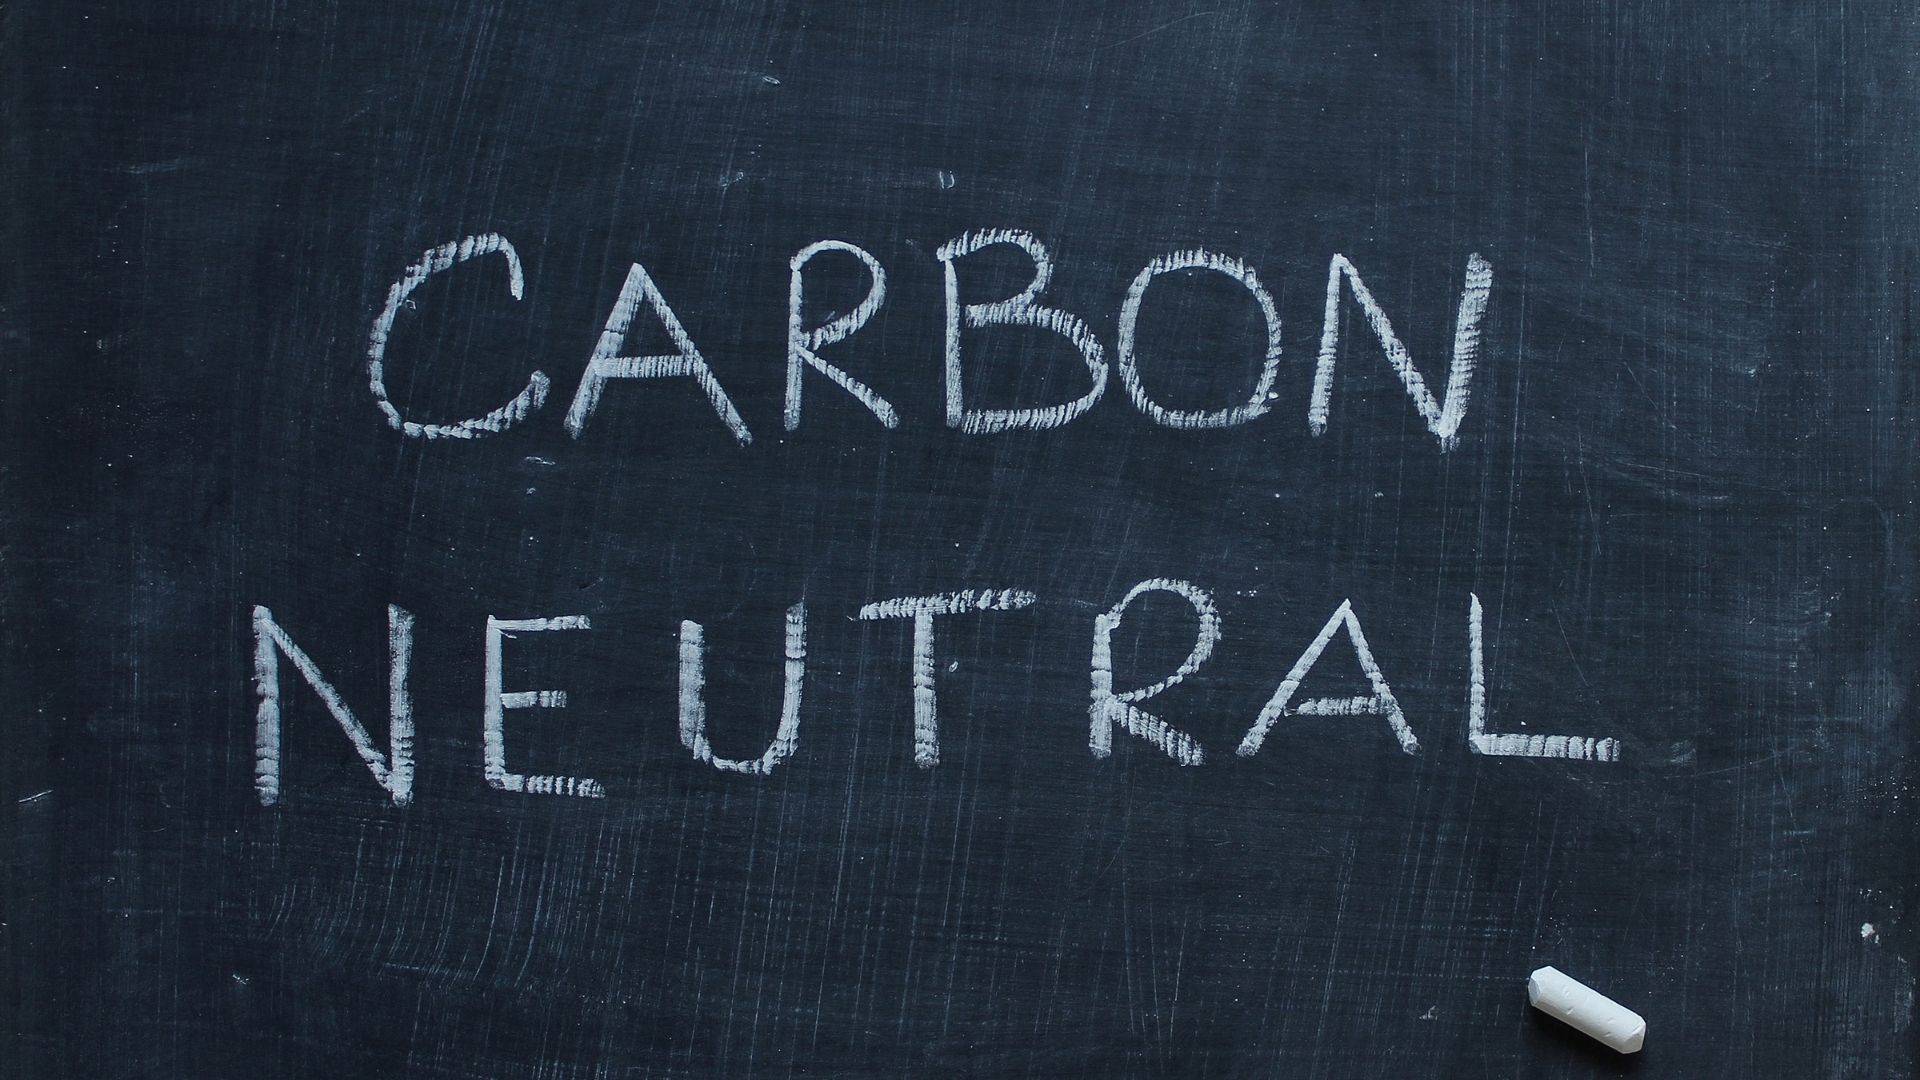 tableau noir où il est écrit carbon neutral 